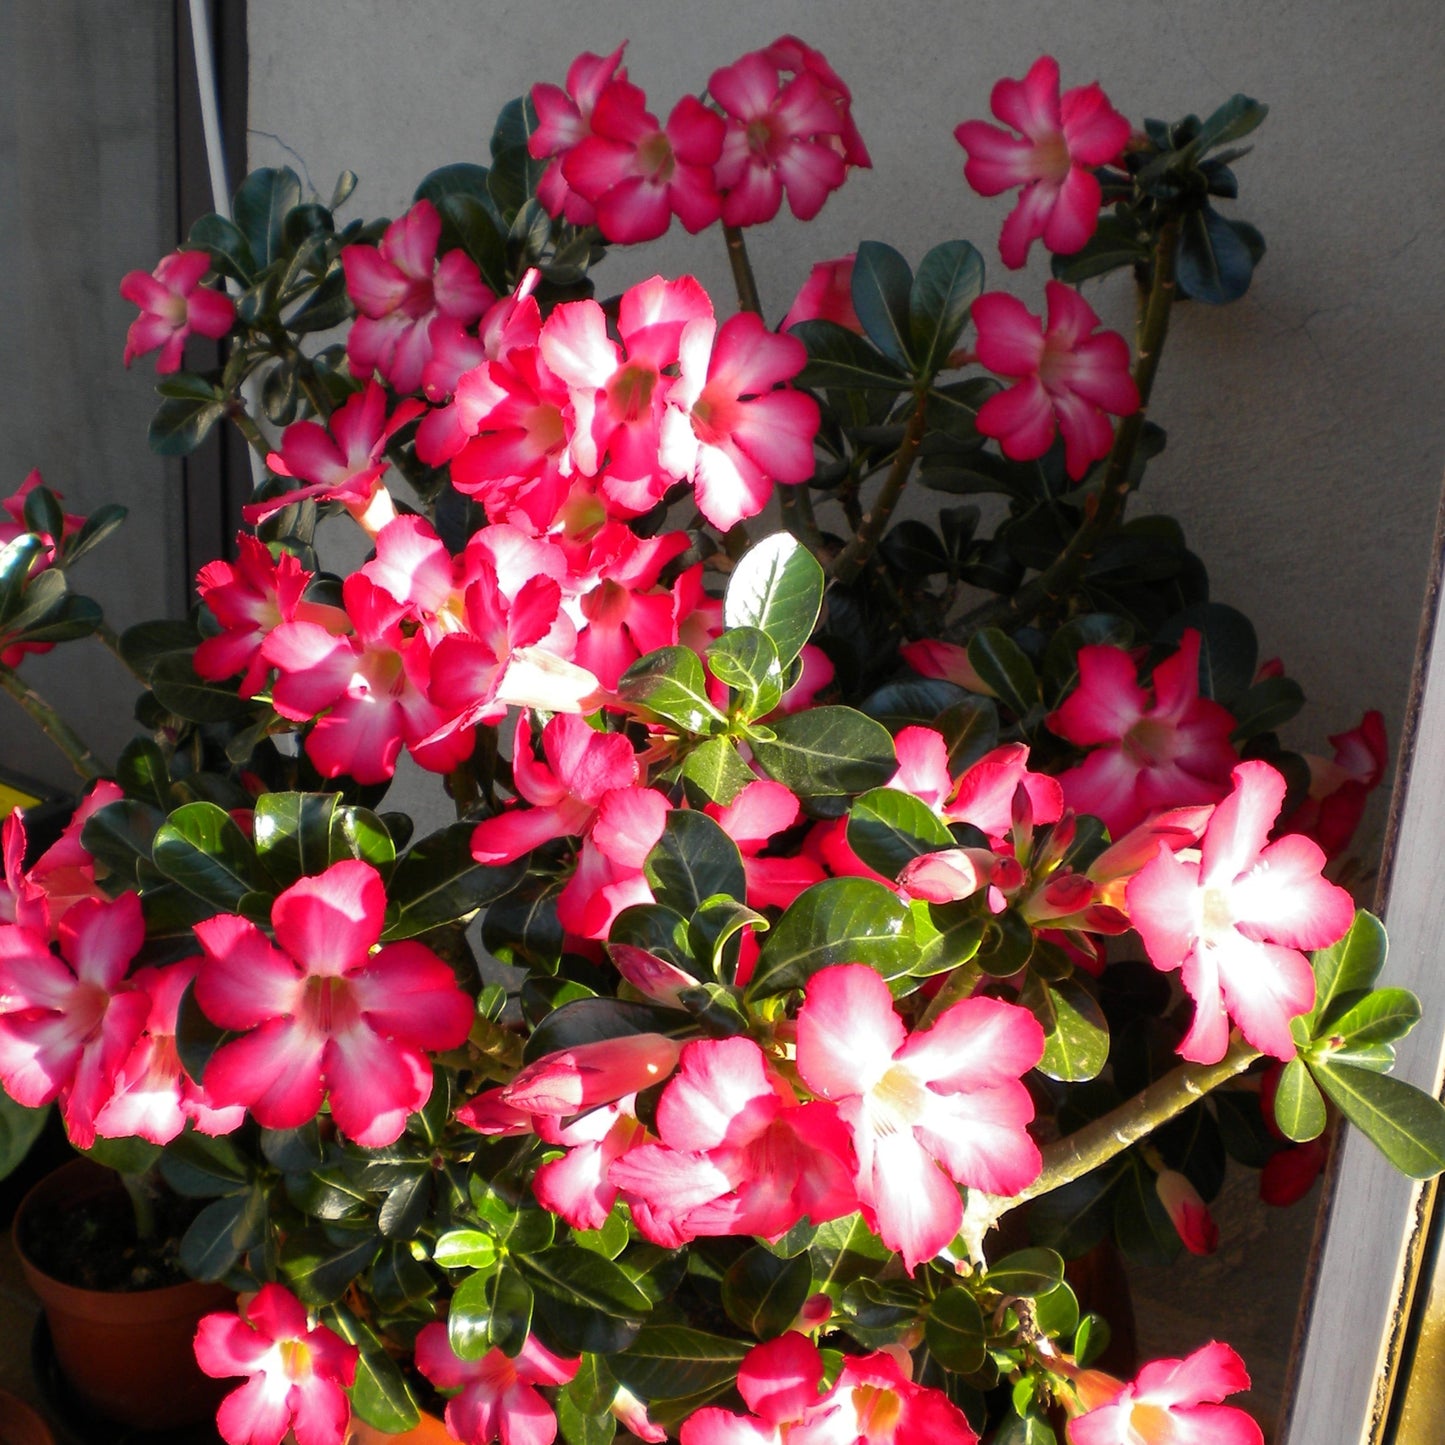 Adenium Obesum Pink - Desert Rose (Square Vase 7X7X8 Cm)